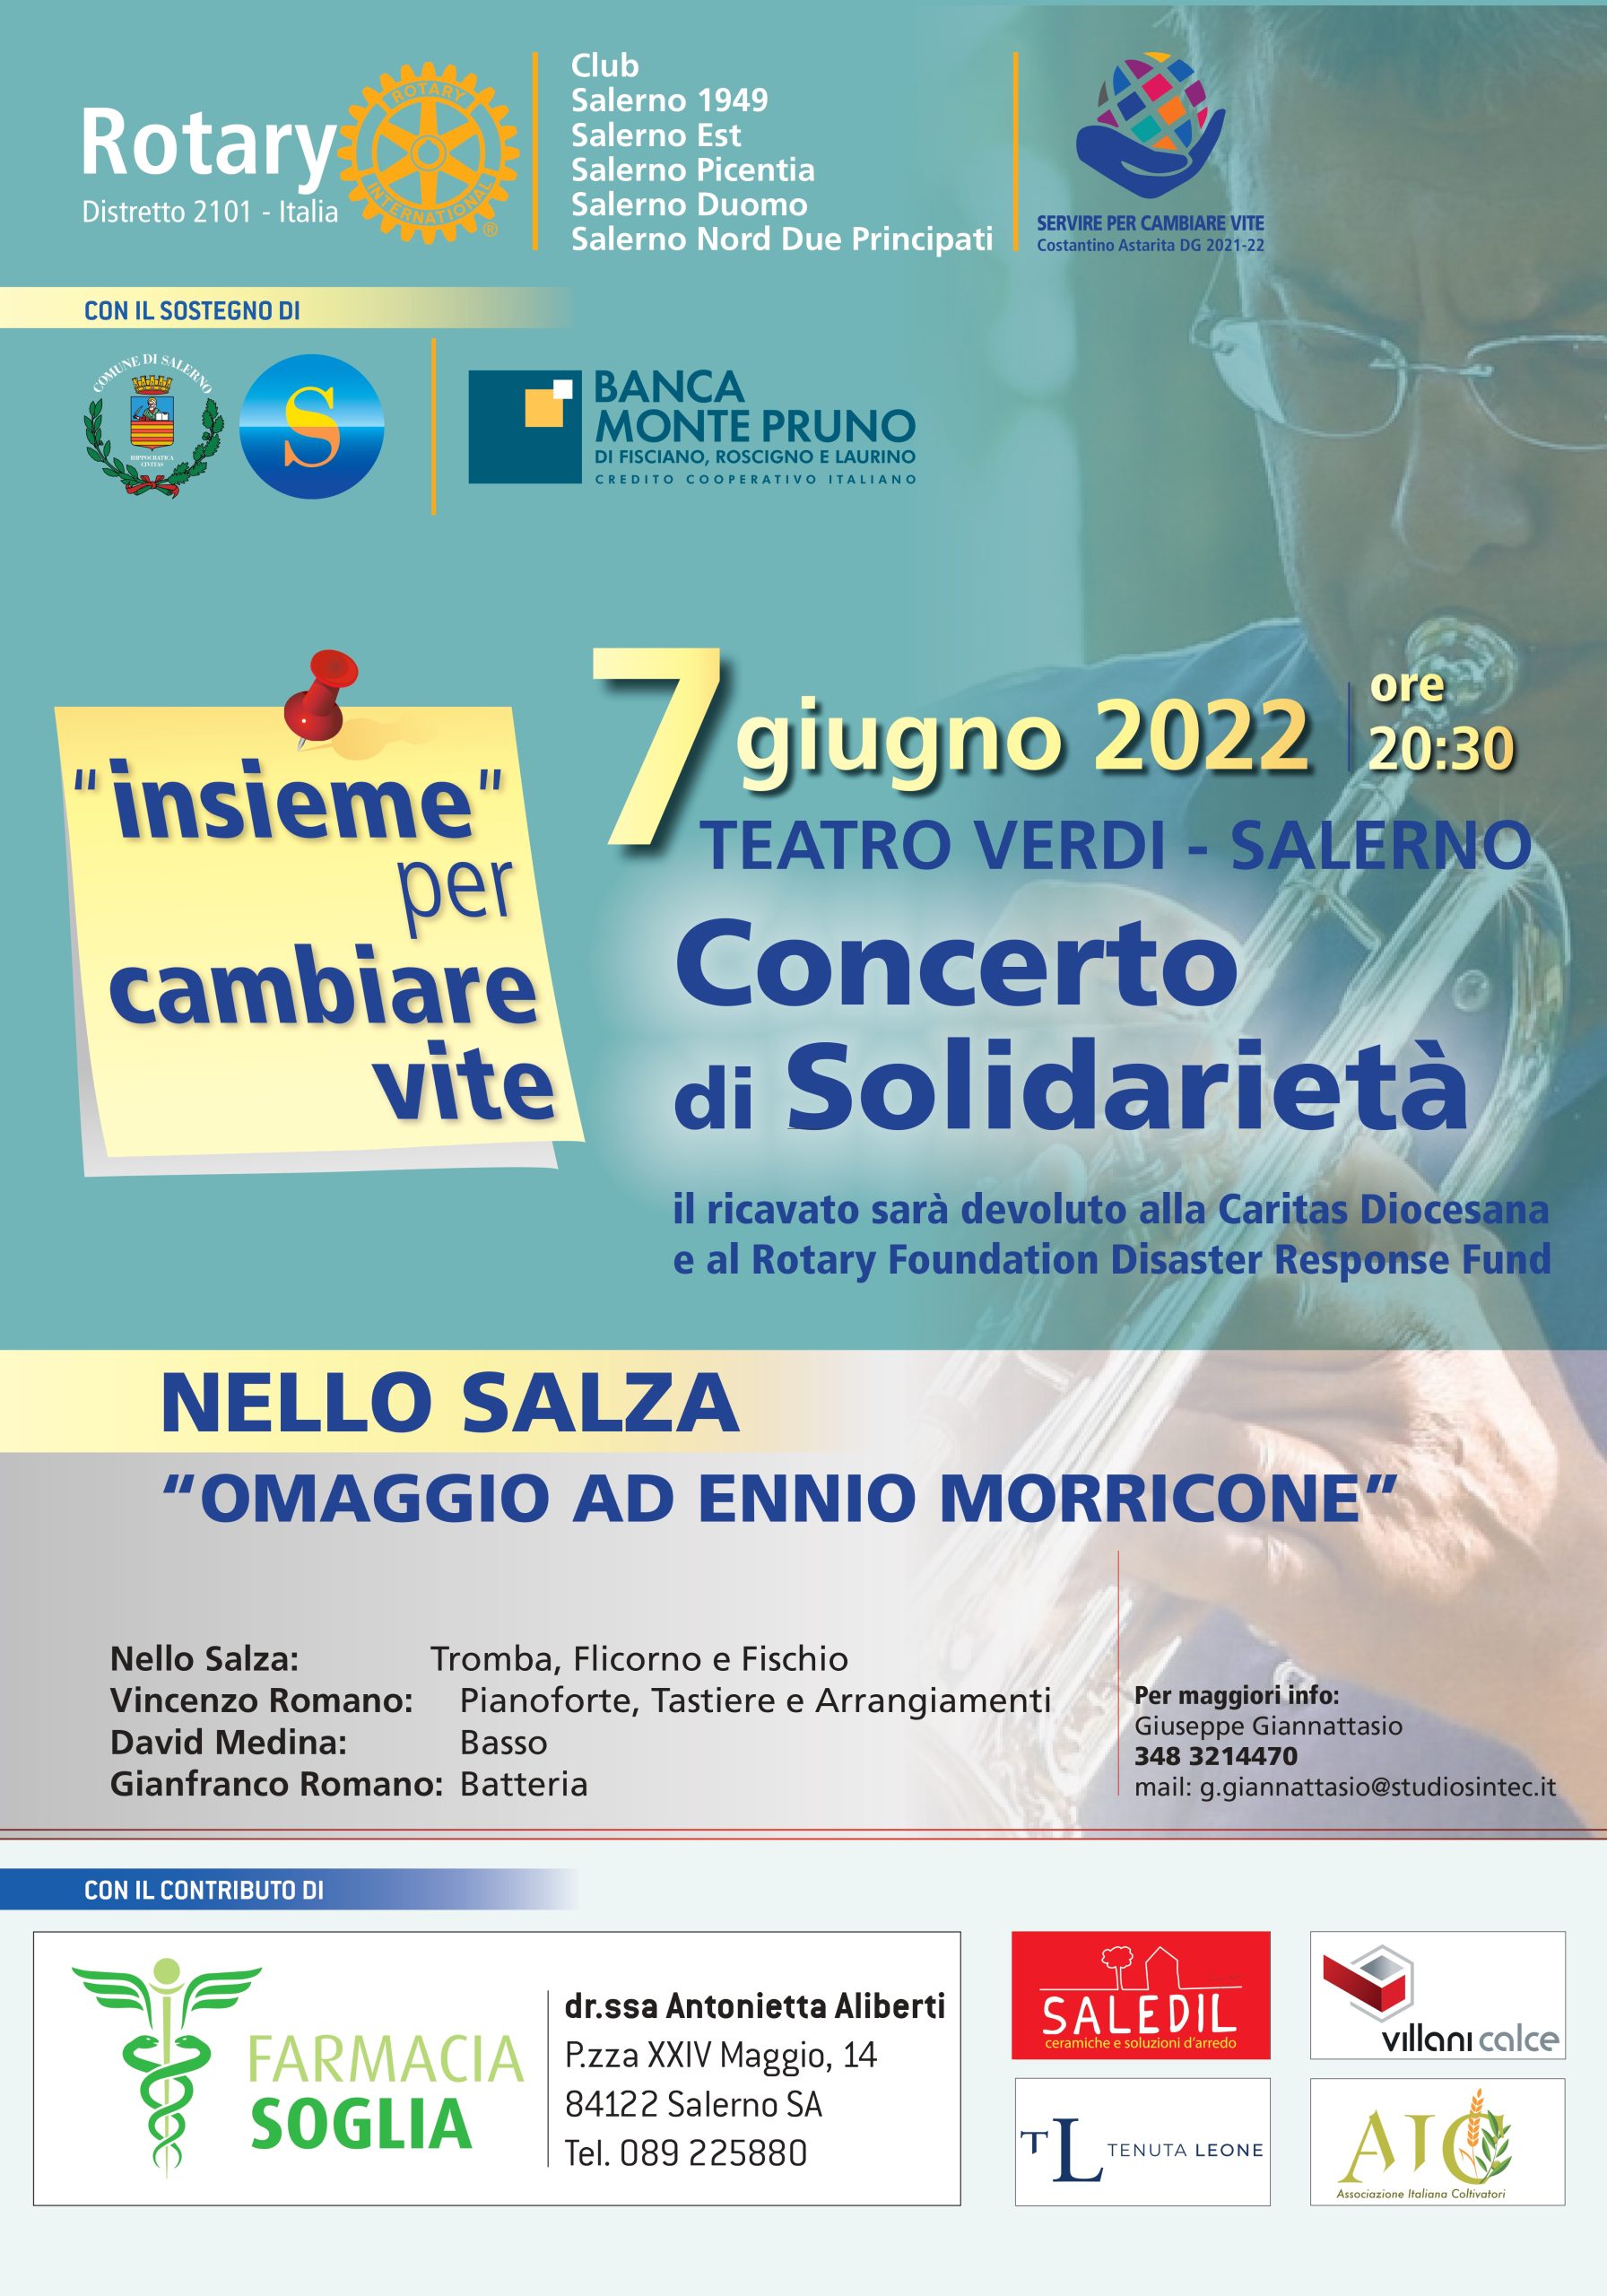 Salerno: Rotary Salernitani, concerto di beneficenza, conferenza stampa